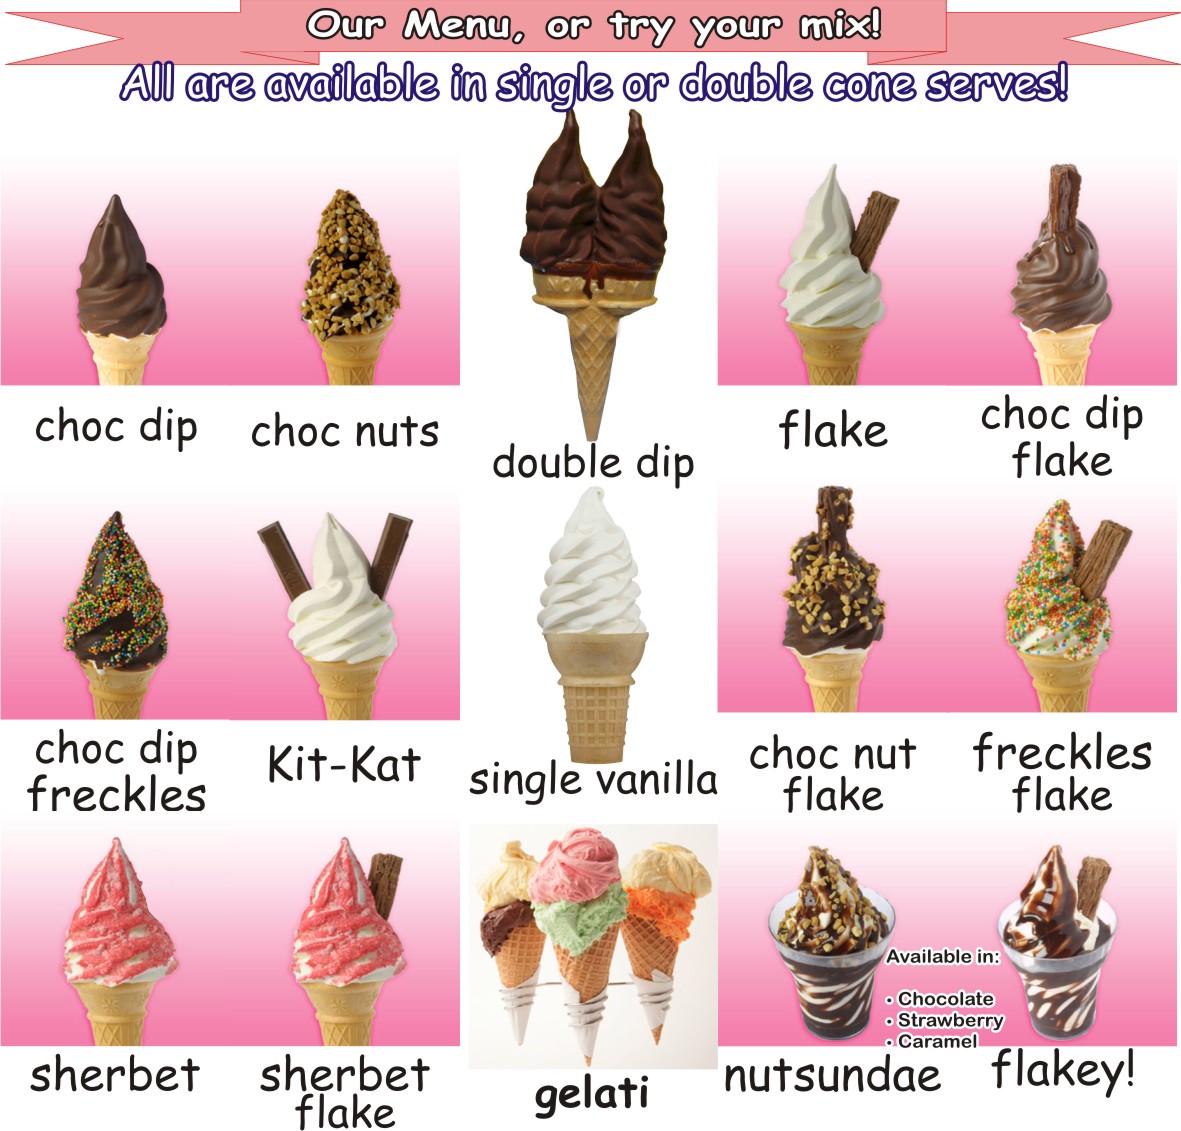 ice cream van prices